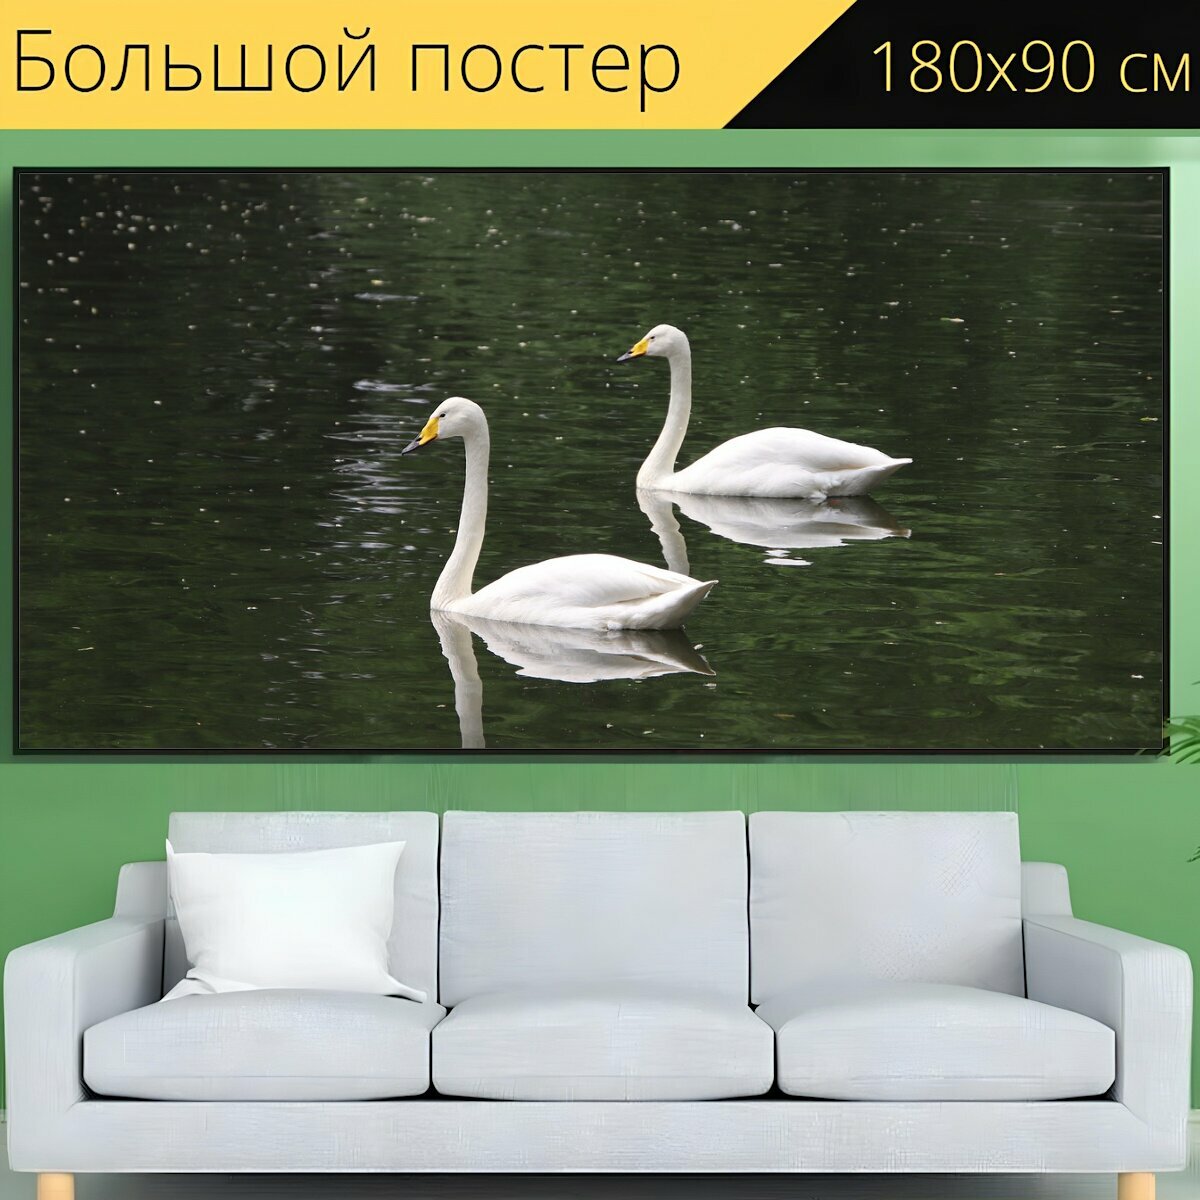 Большой постер "Лебеди, пара, пруд" 180 x 90 см. для интерьера